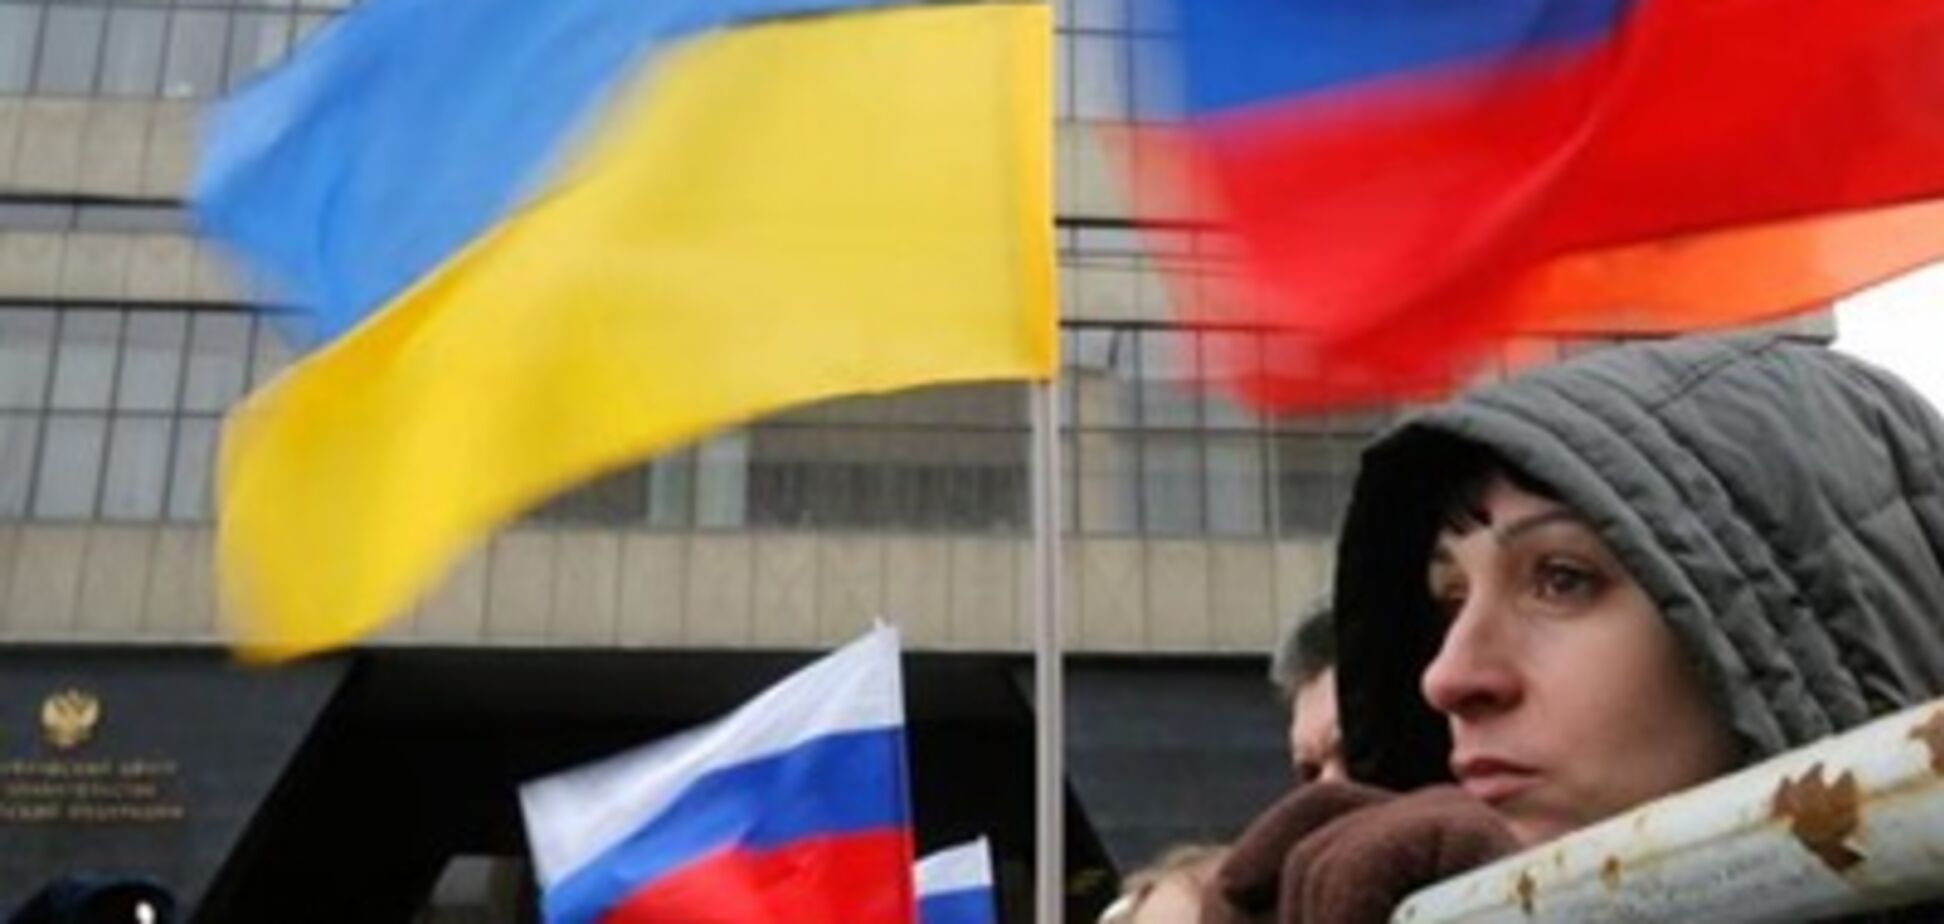 Це почуття сильніше, ніж ненависть: журналіст відверто розповів про ставлення до росіян в Україні